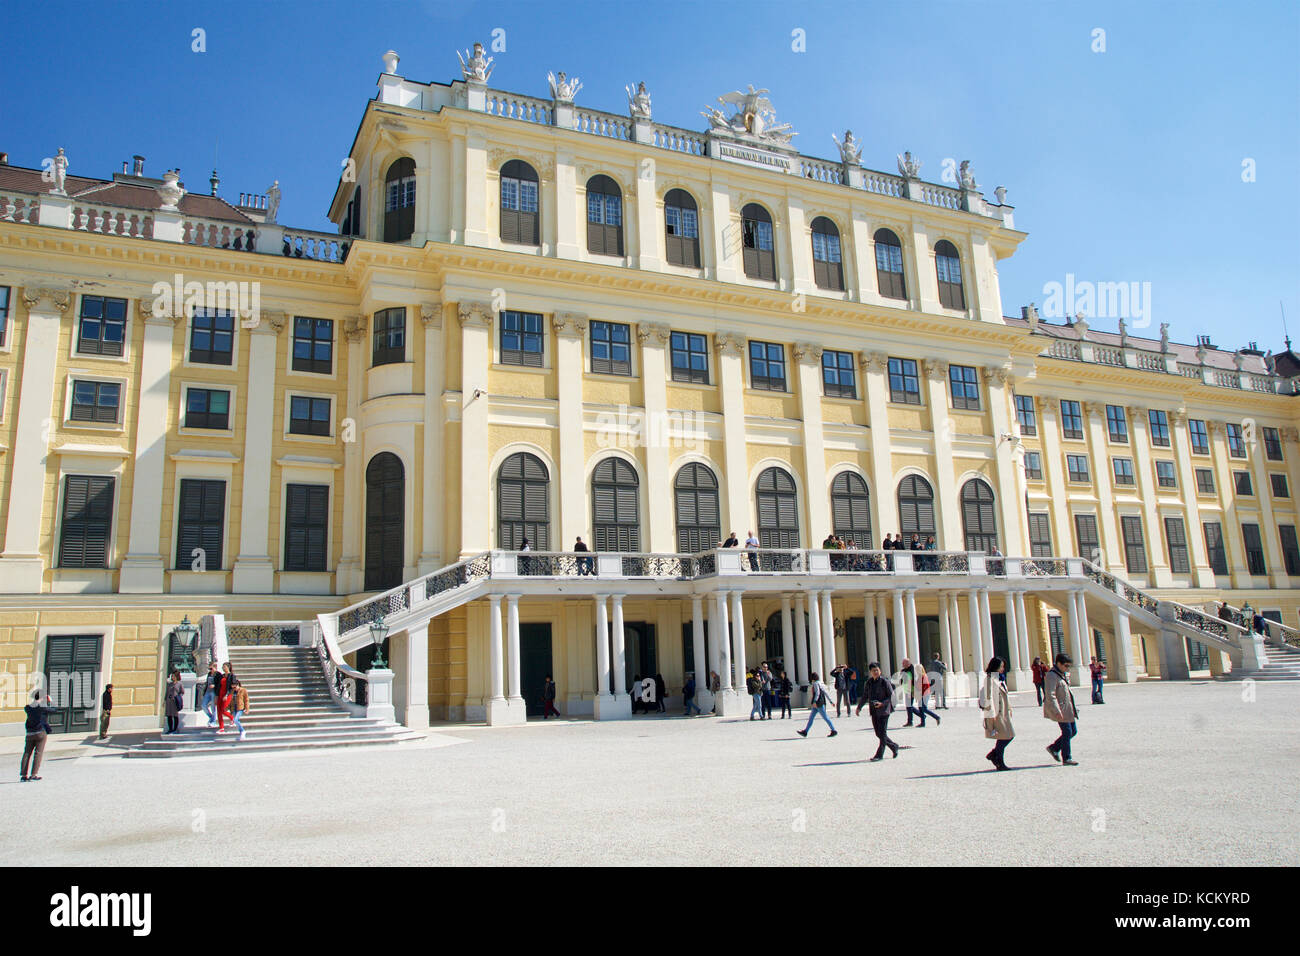 Viena, Austria - Abr 30th, 2017: fachada del palacio de Schönbrunn, antigua residencia de verano imperial, construido y remodelado durante el reinado de la emperatriz María Teresa en 1743 Foto de stock